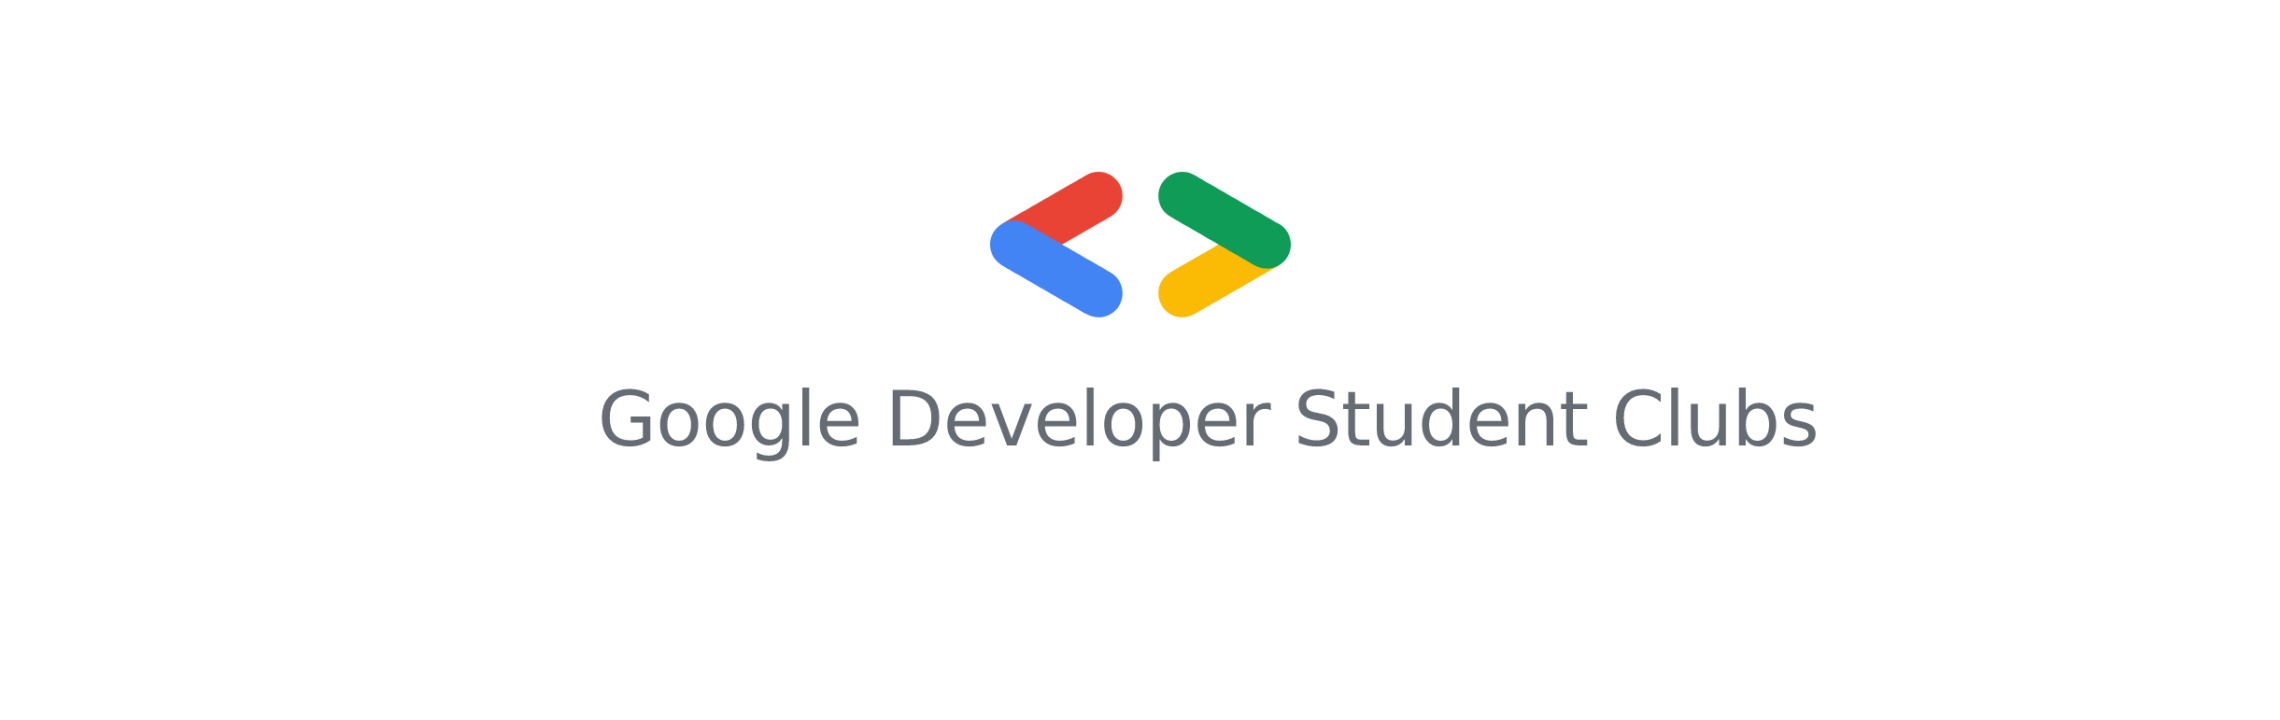 Google Developer Student Clubs University of Liège | Google Developer ...